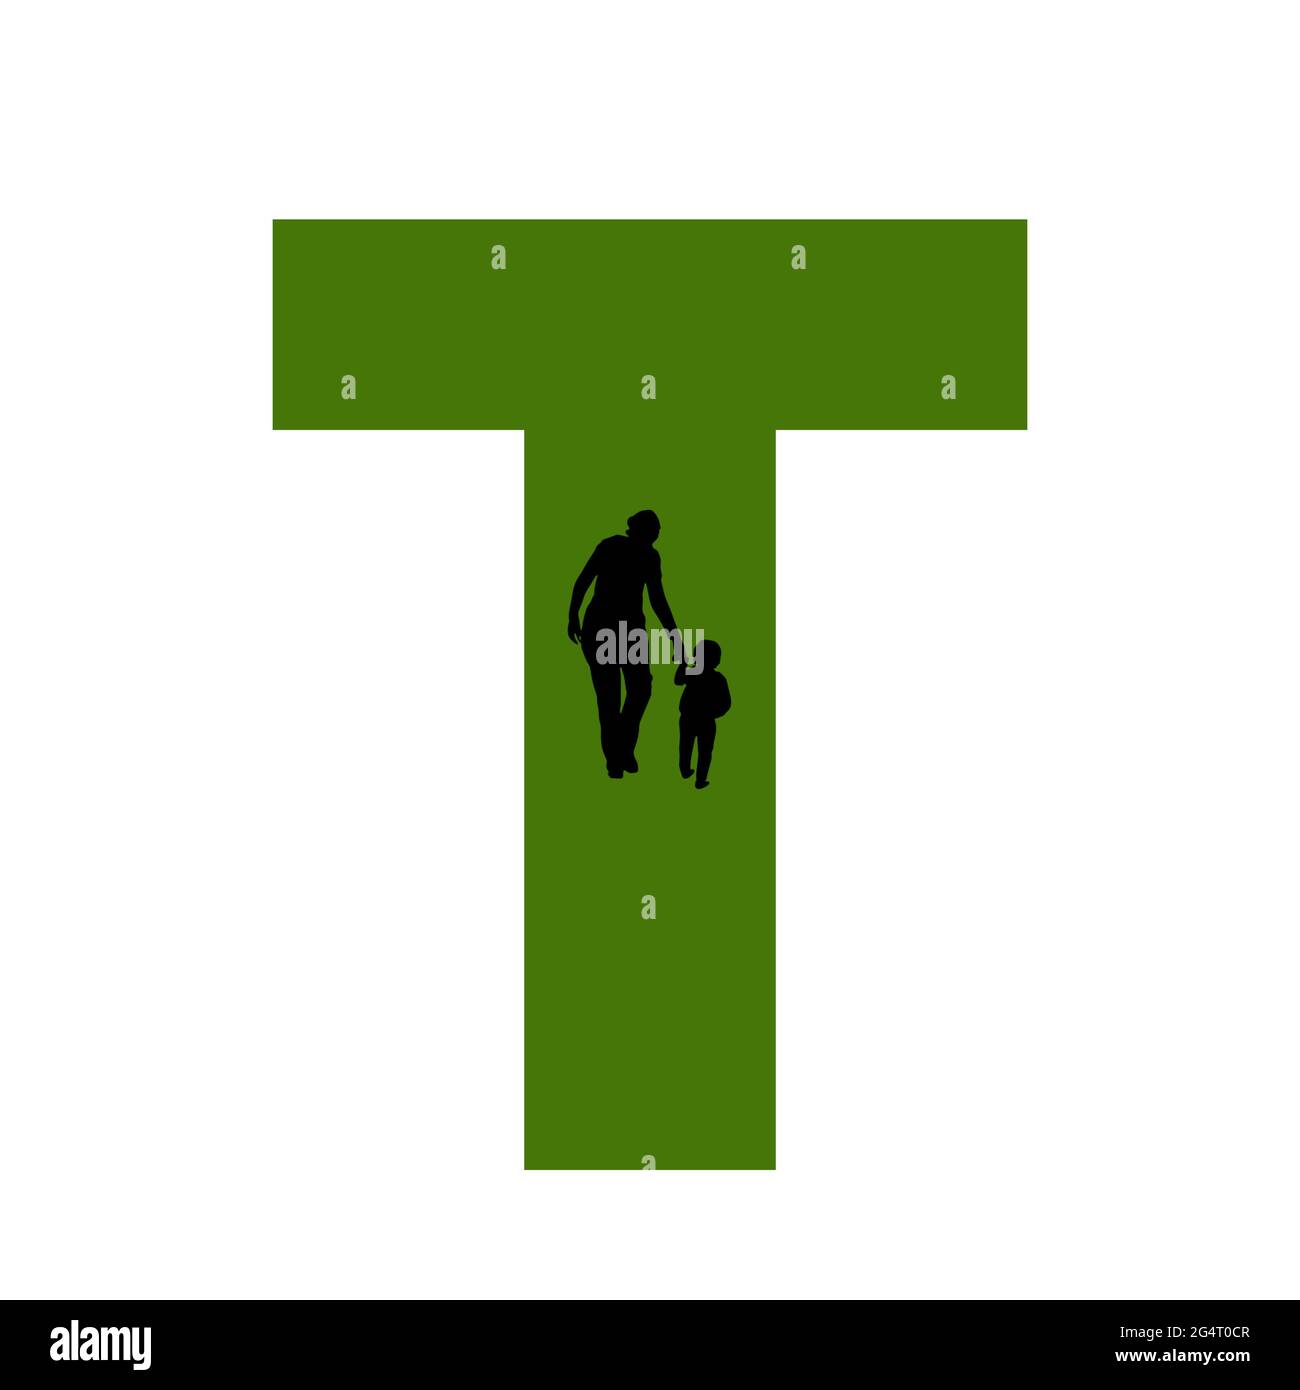 Lettre T de l'alphabet avec silhouette d'une mère et d'un enfant marchant, en vert et noir Banque D'Images